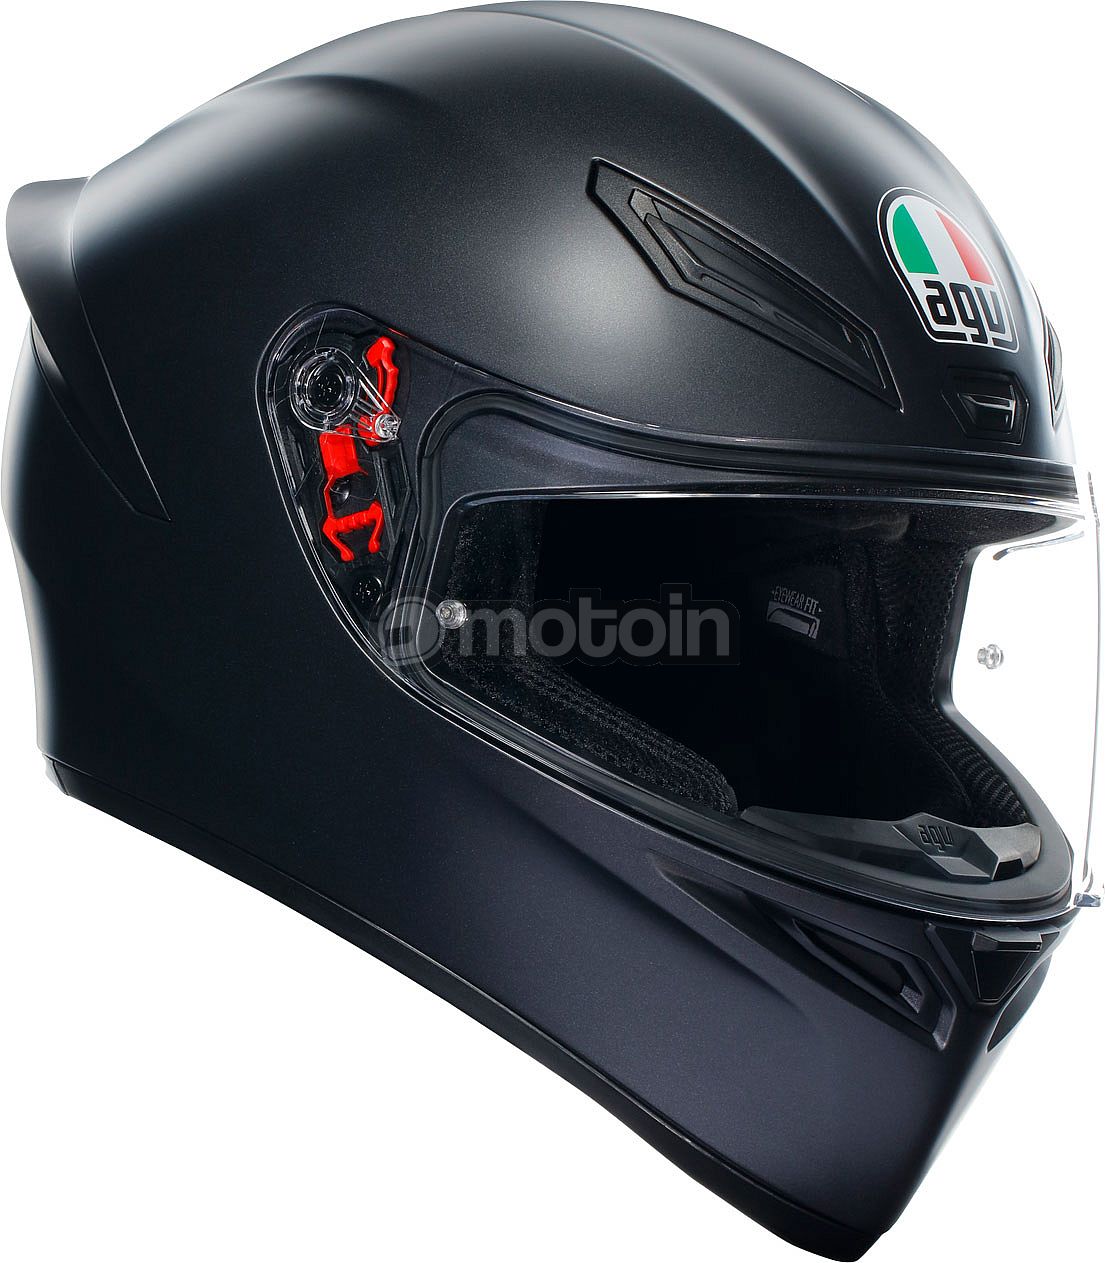 AGV K1 S, full face helmet